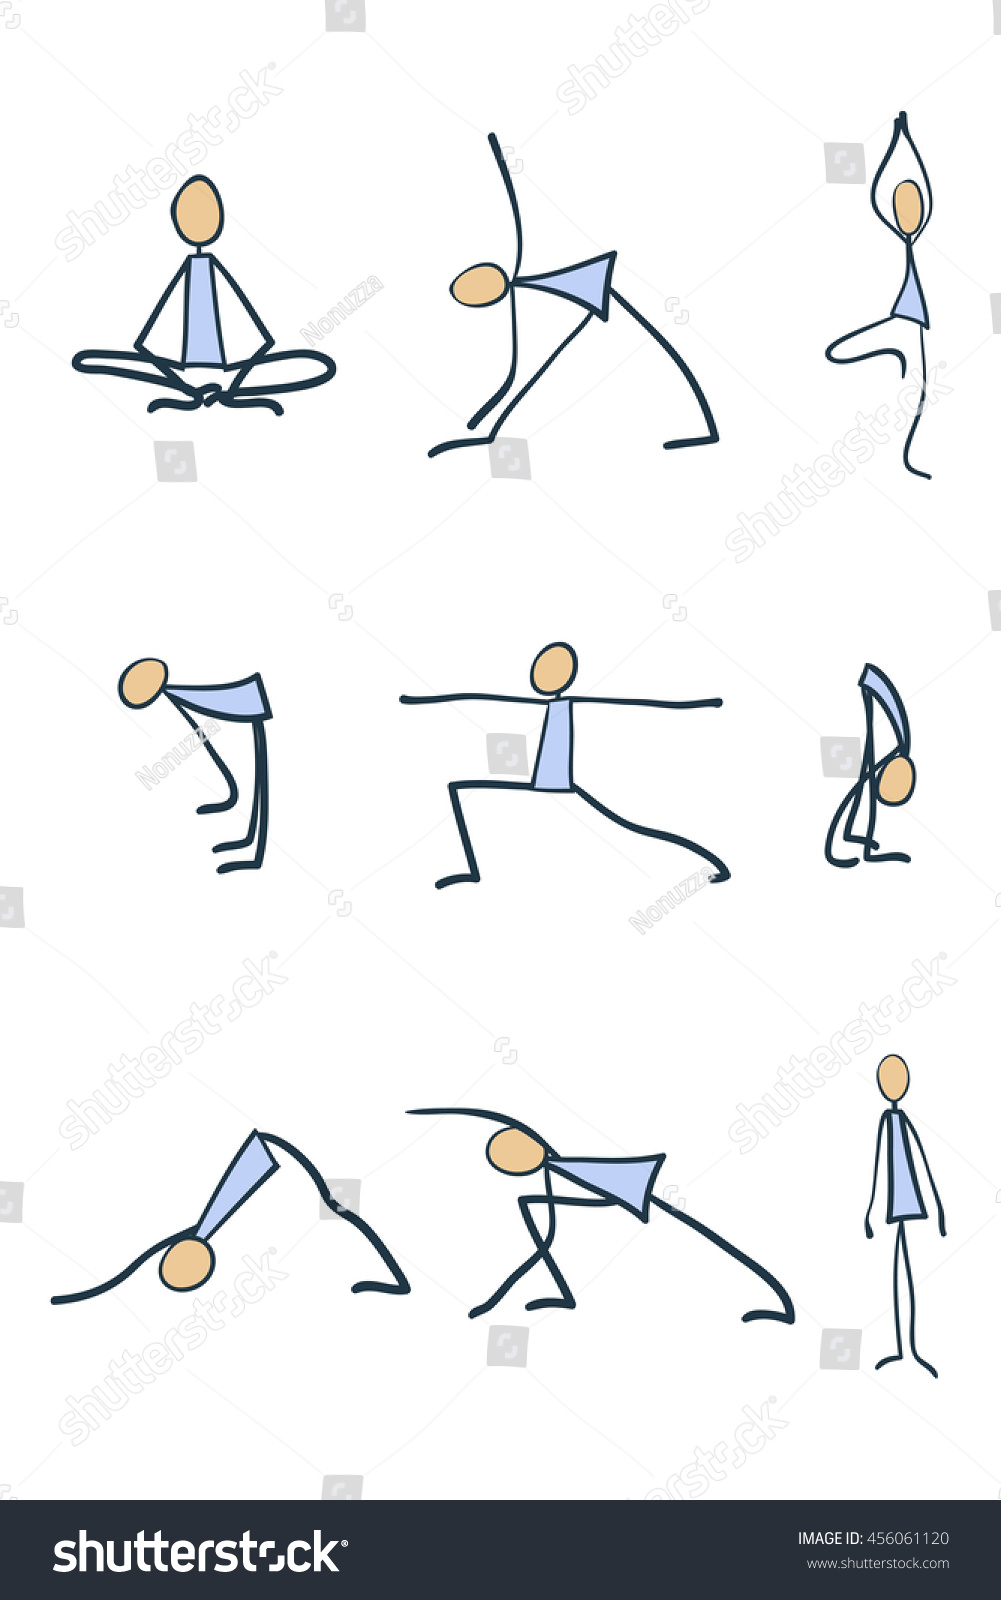 stick figuresthe yoga poses stock vector 456061120 shutterstock